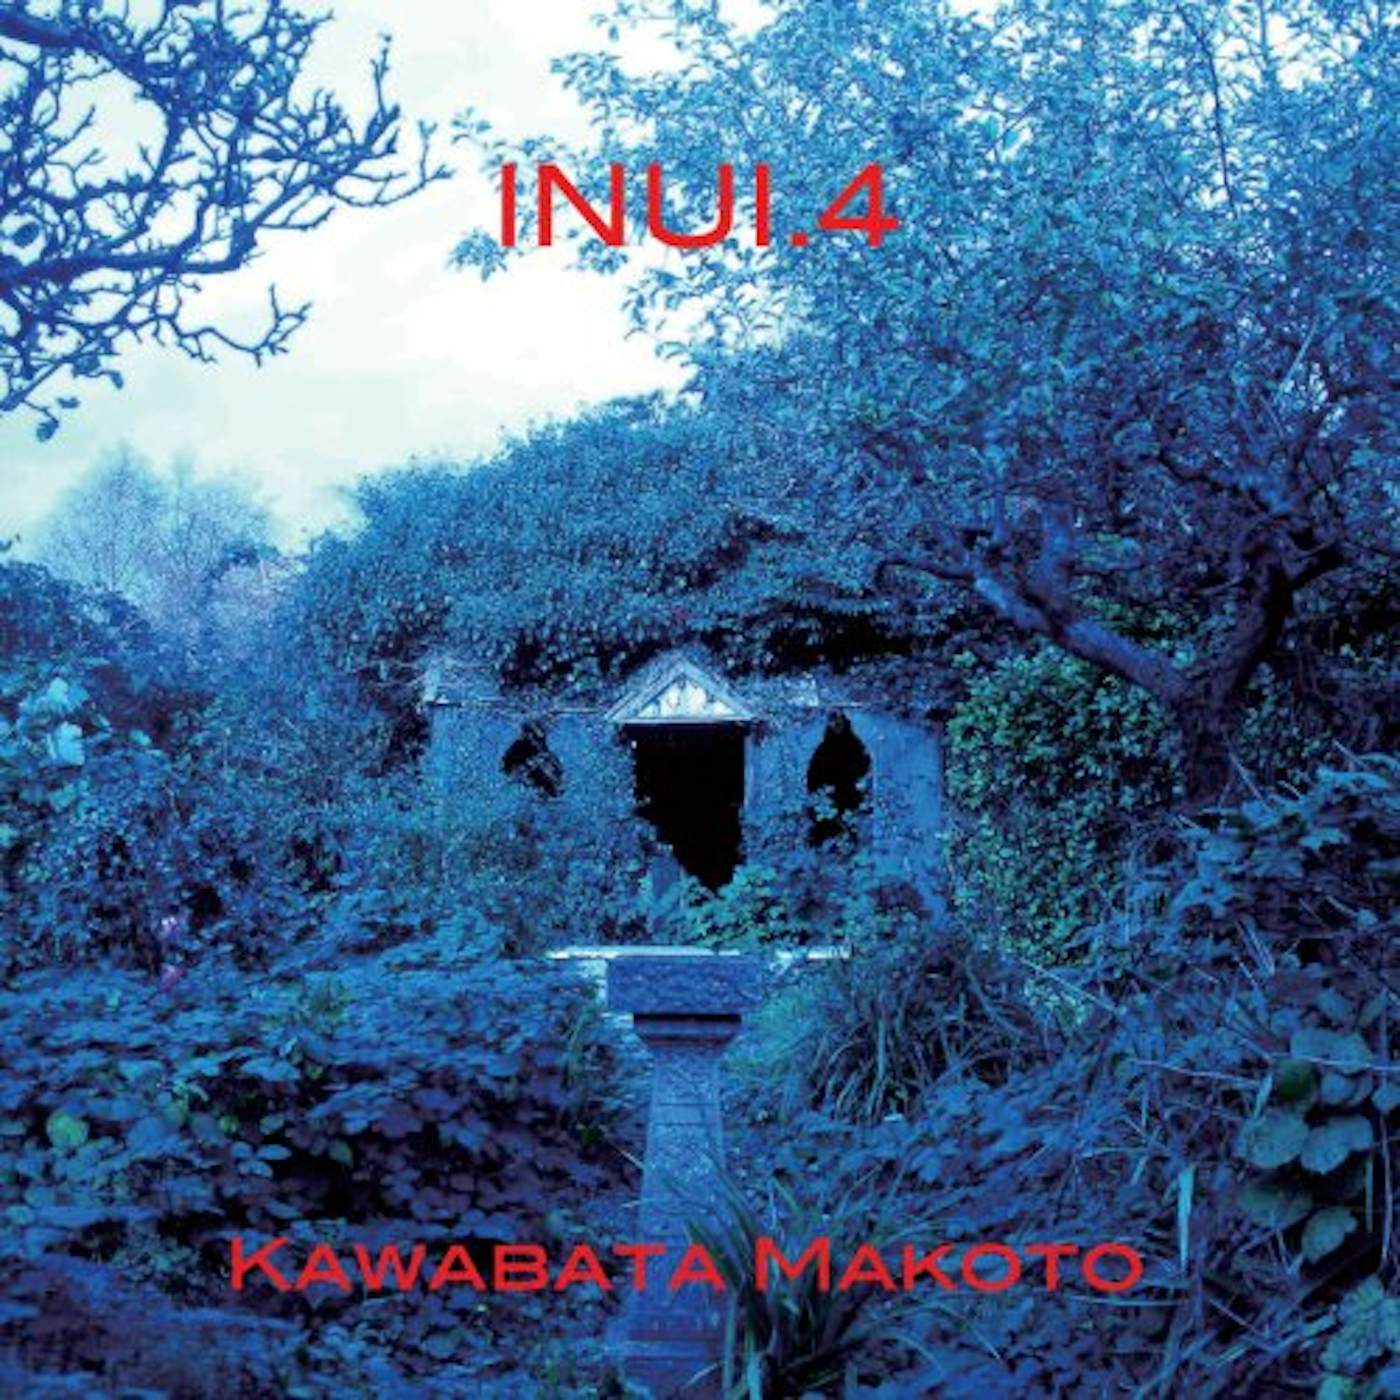 Kawabata Makoto INUI 4 CD